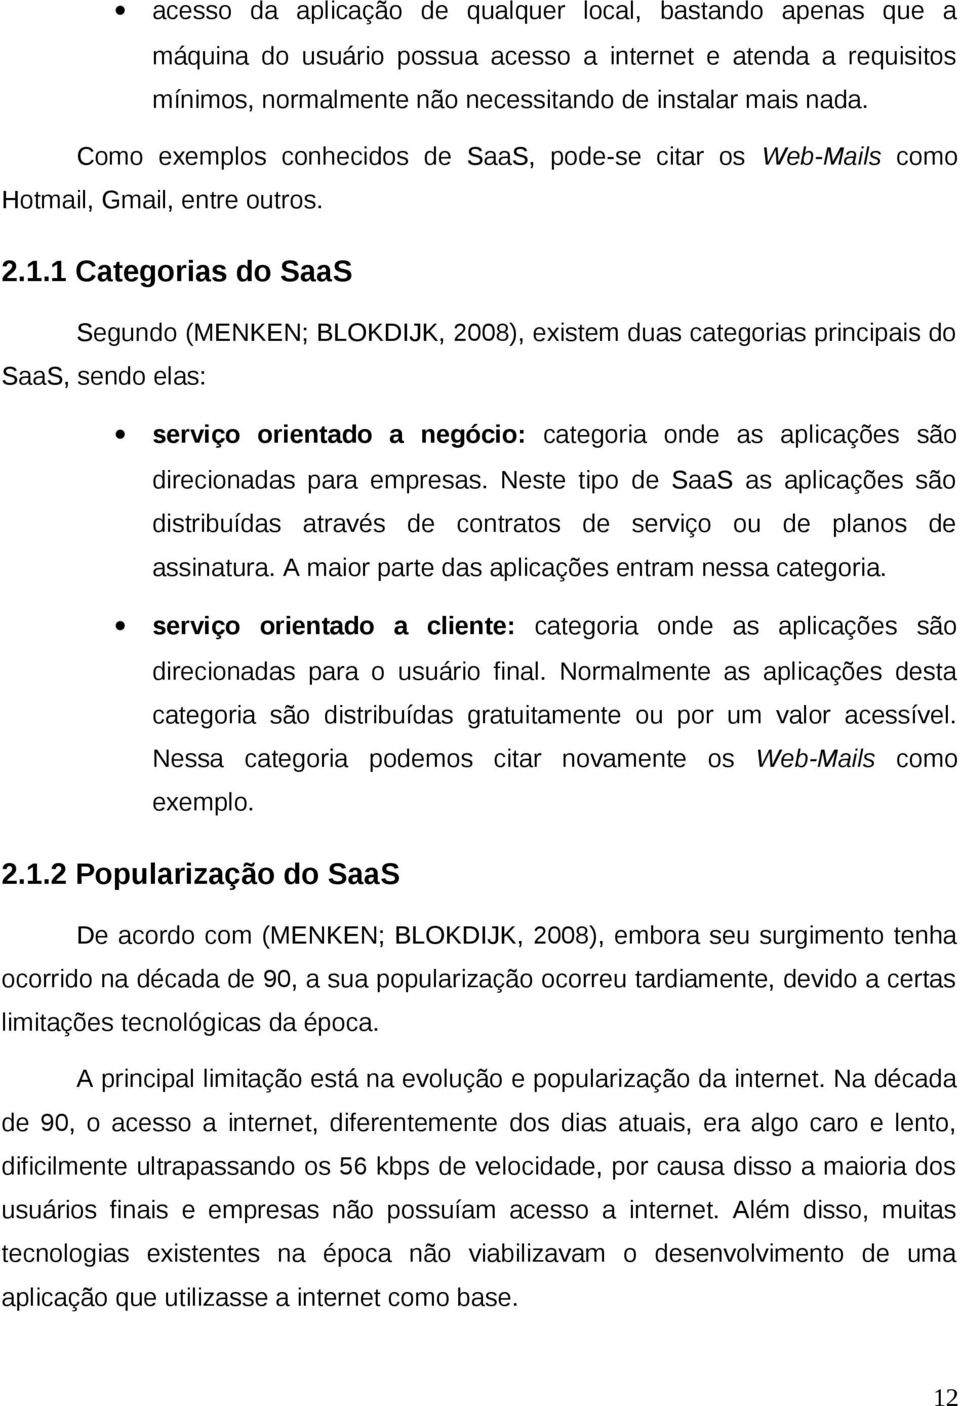 1 Categorias do SaaS Segundo (MENKEN; BLOKDIJK, 2008), existem duas categorias principais do SaaS, sendo elas: serviço orientado a negócio: categoria onde as aplicações são direcionadas para empresas.